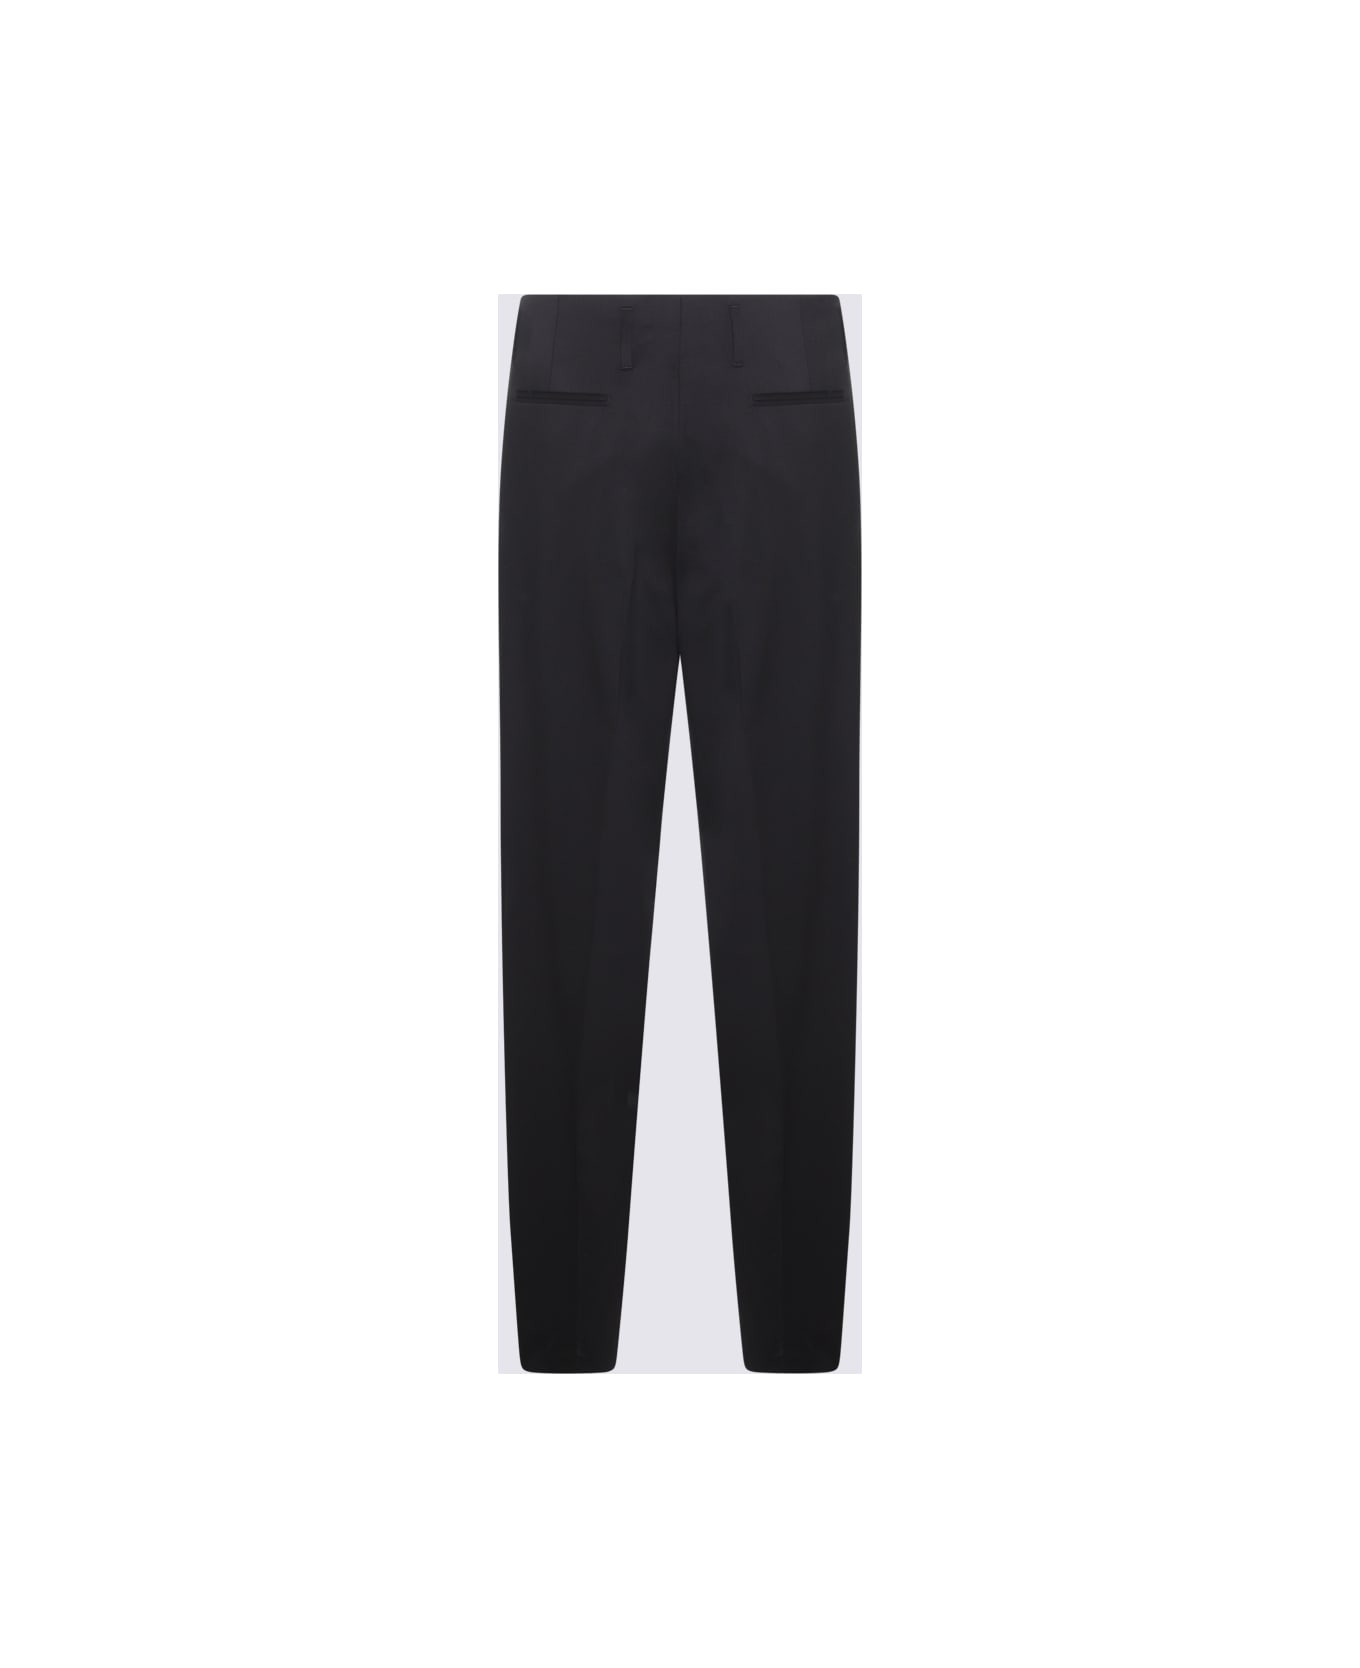 Vivienne Westwood Black Wool Pants - Black